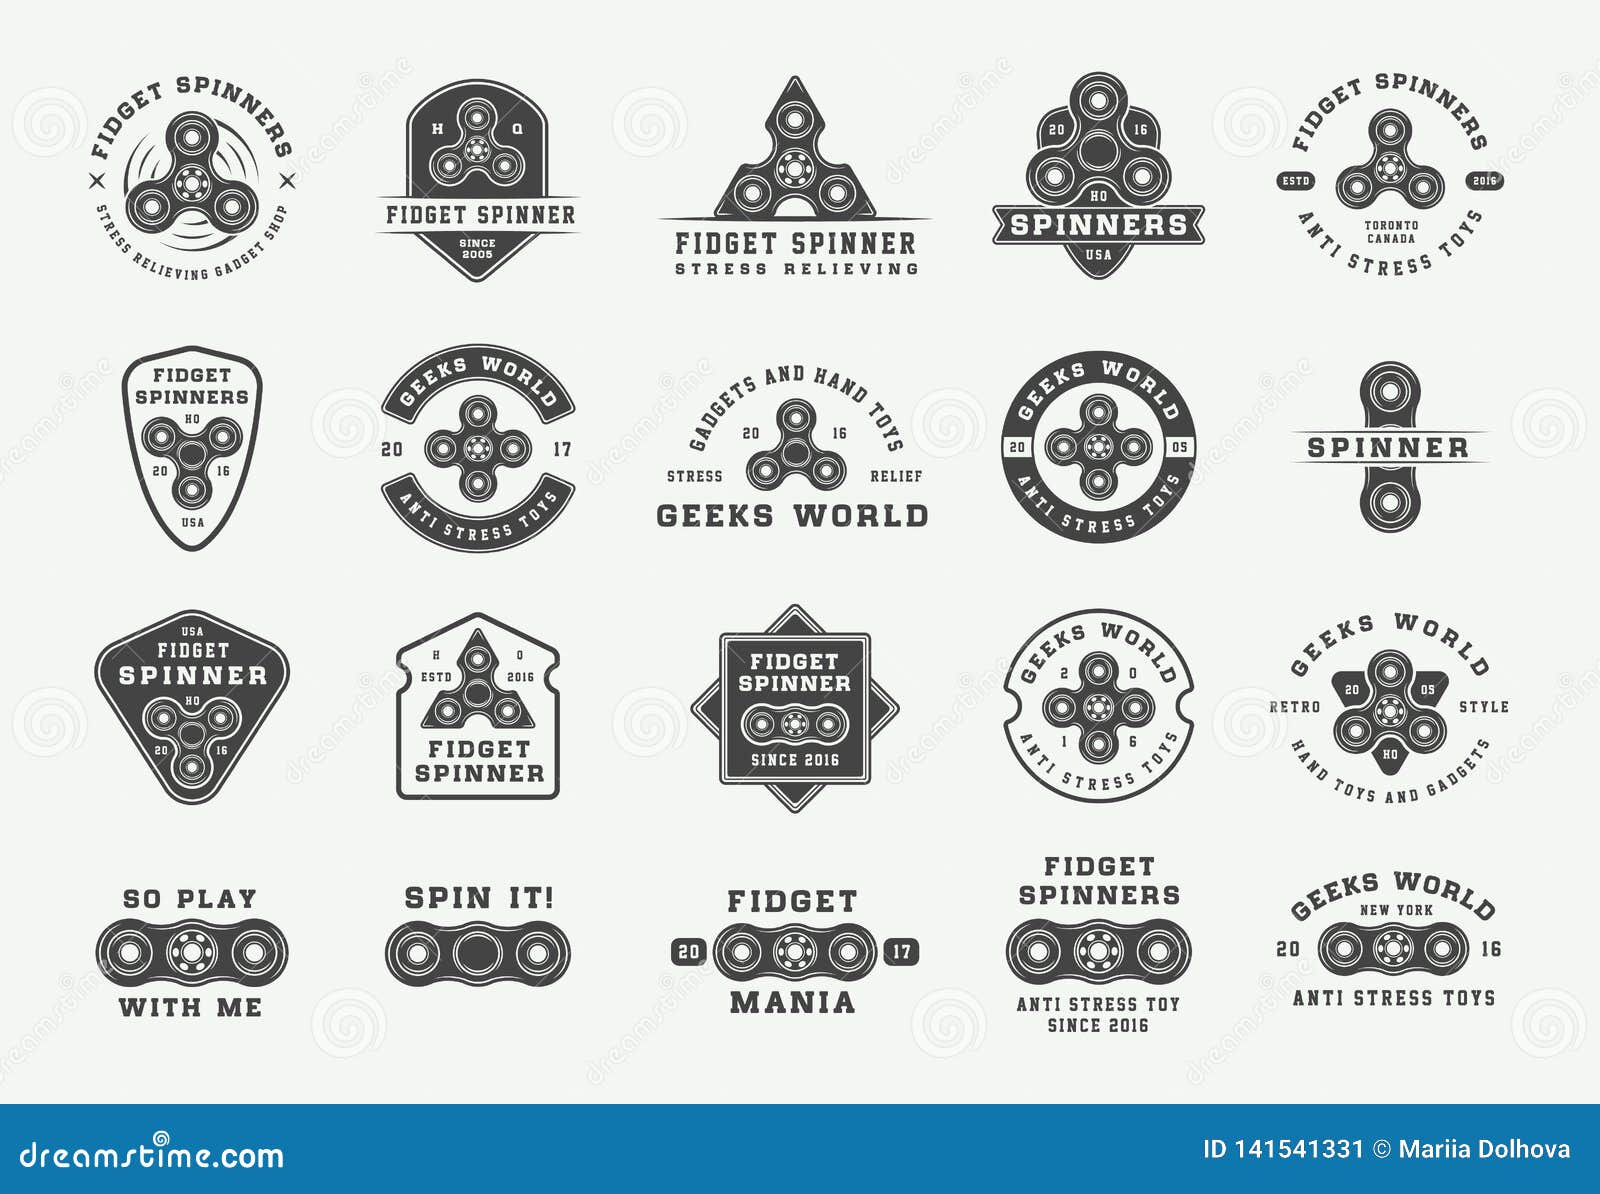 Set of Vintage Fidget Spinners Logos, Emblems, Badges and Motivational ...